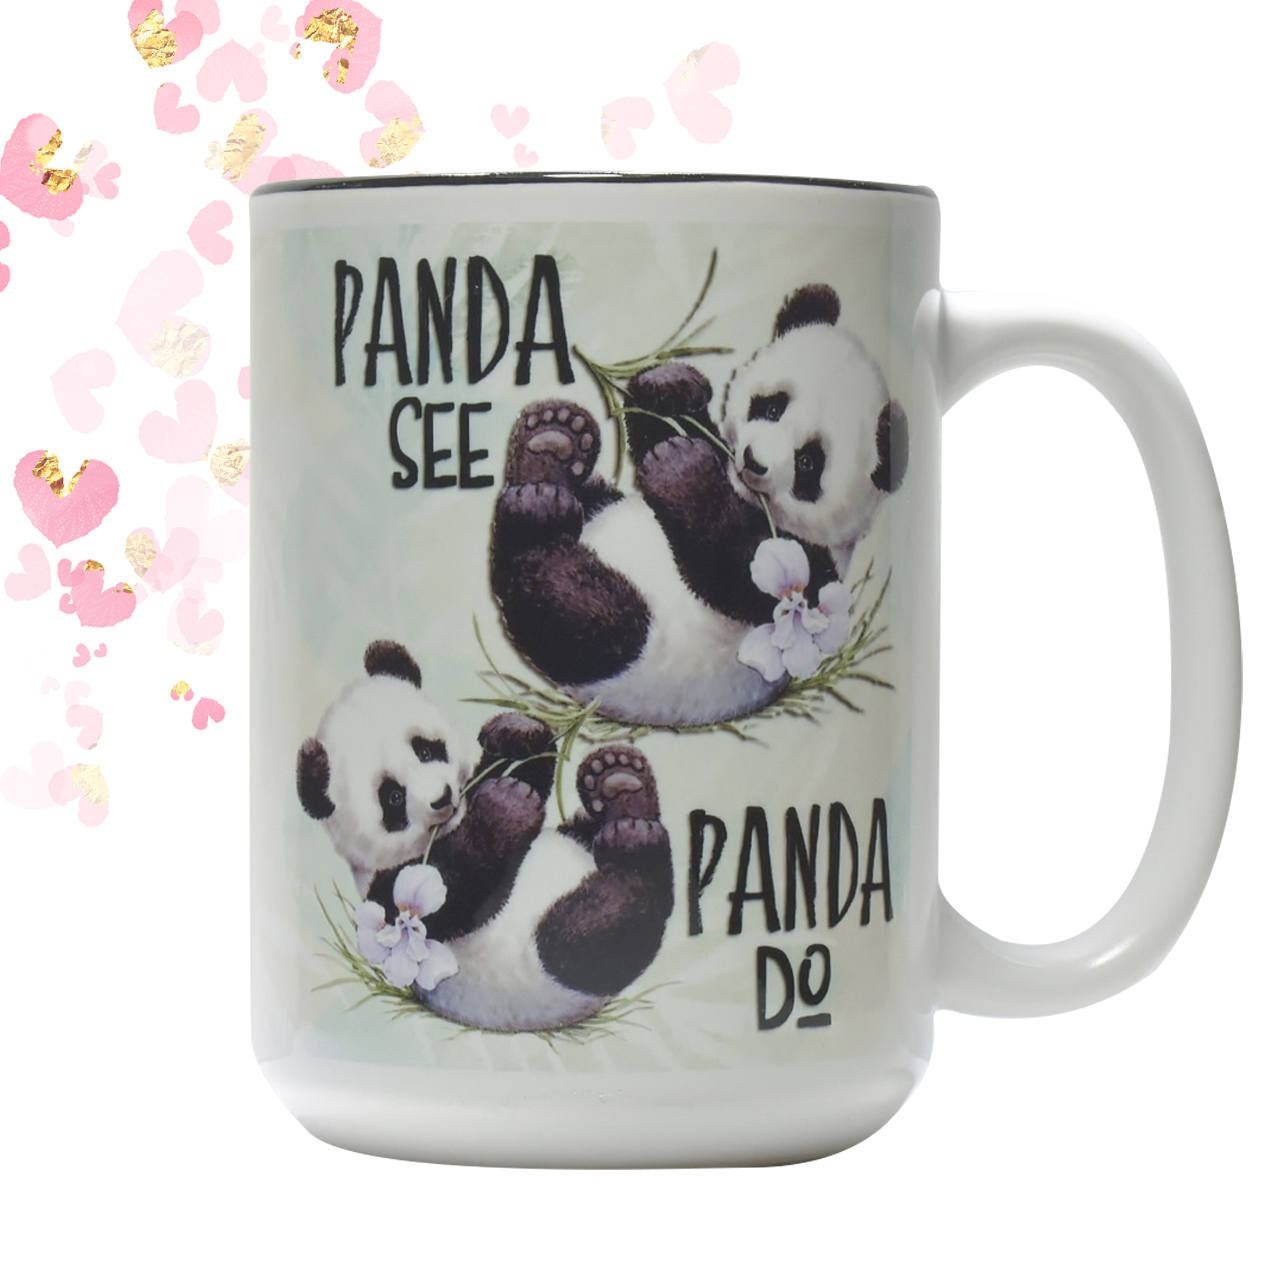 Panda See Panda Do coffee mug Friend Gift Funny coffee Mug Animal Spirit Gift for Mom Grandmother